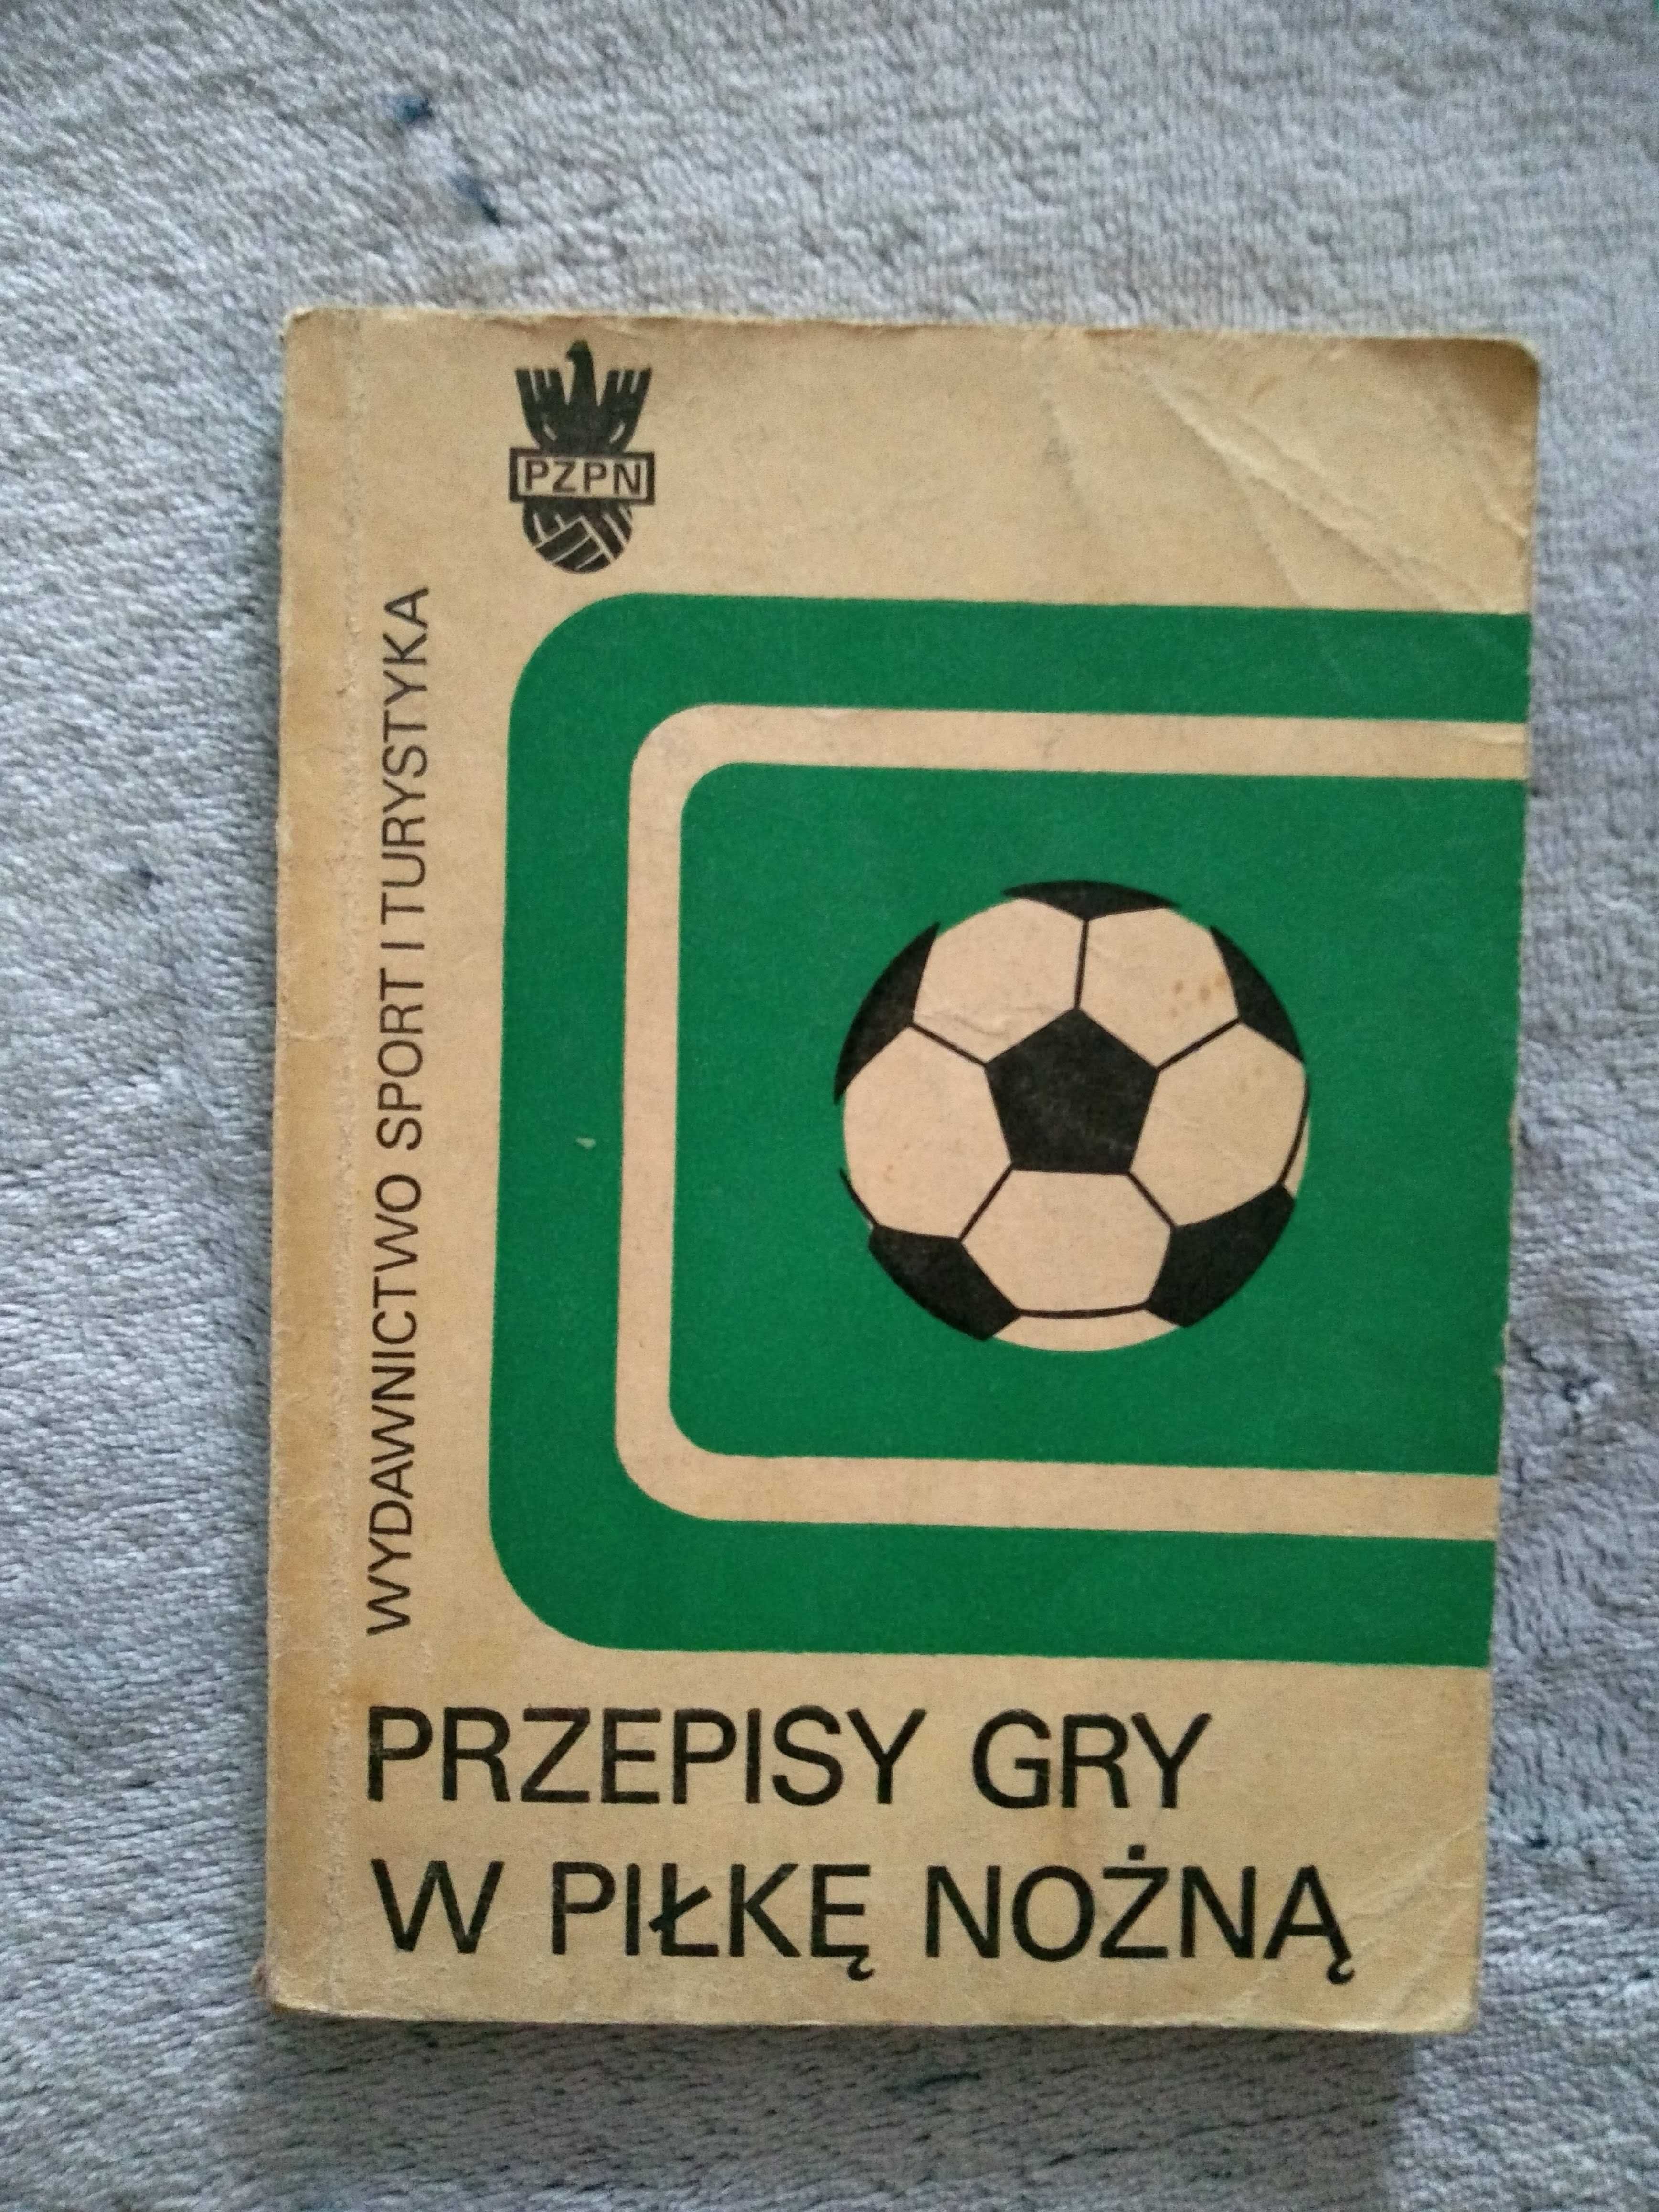 Przepisy gry w piłkę nożną - Wyd. Sport i Turystyka'77